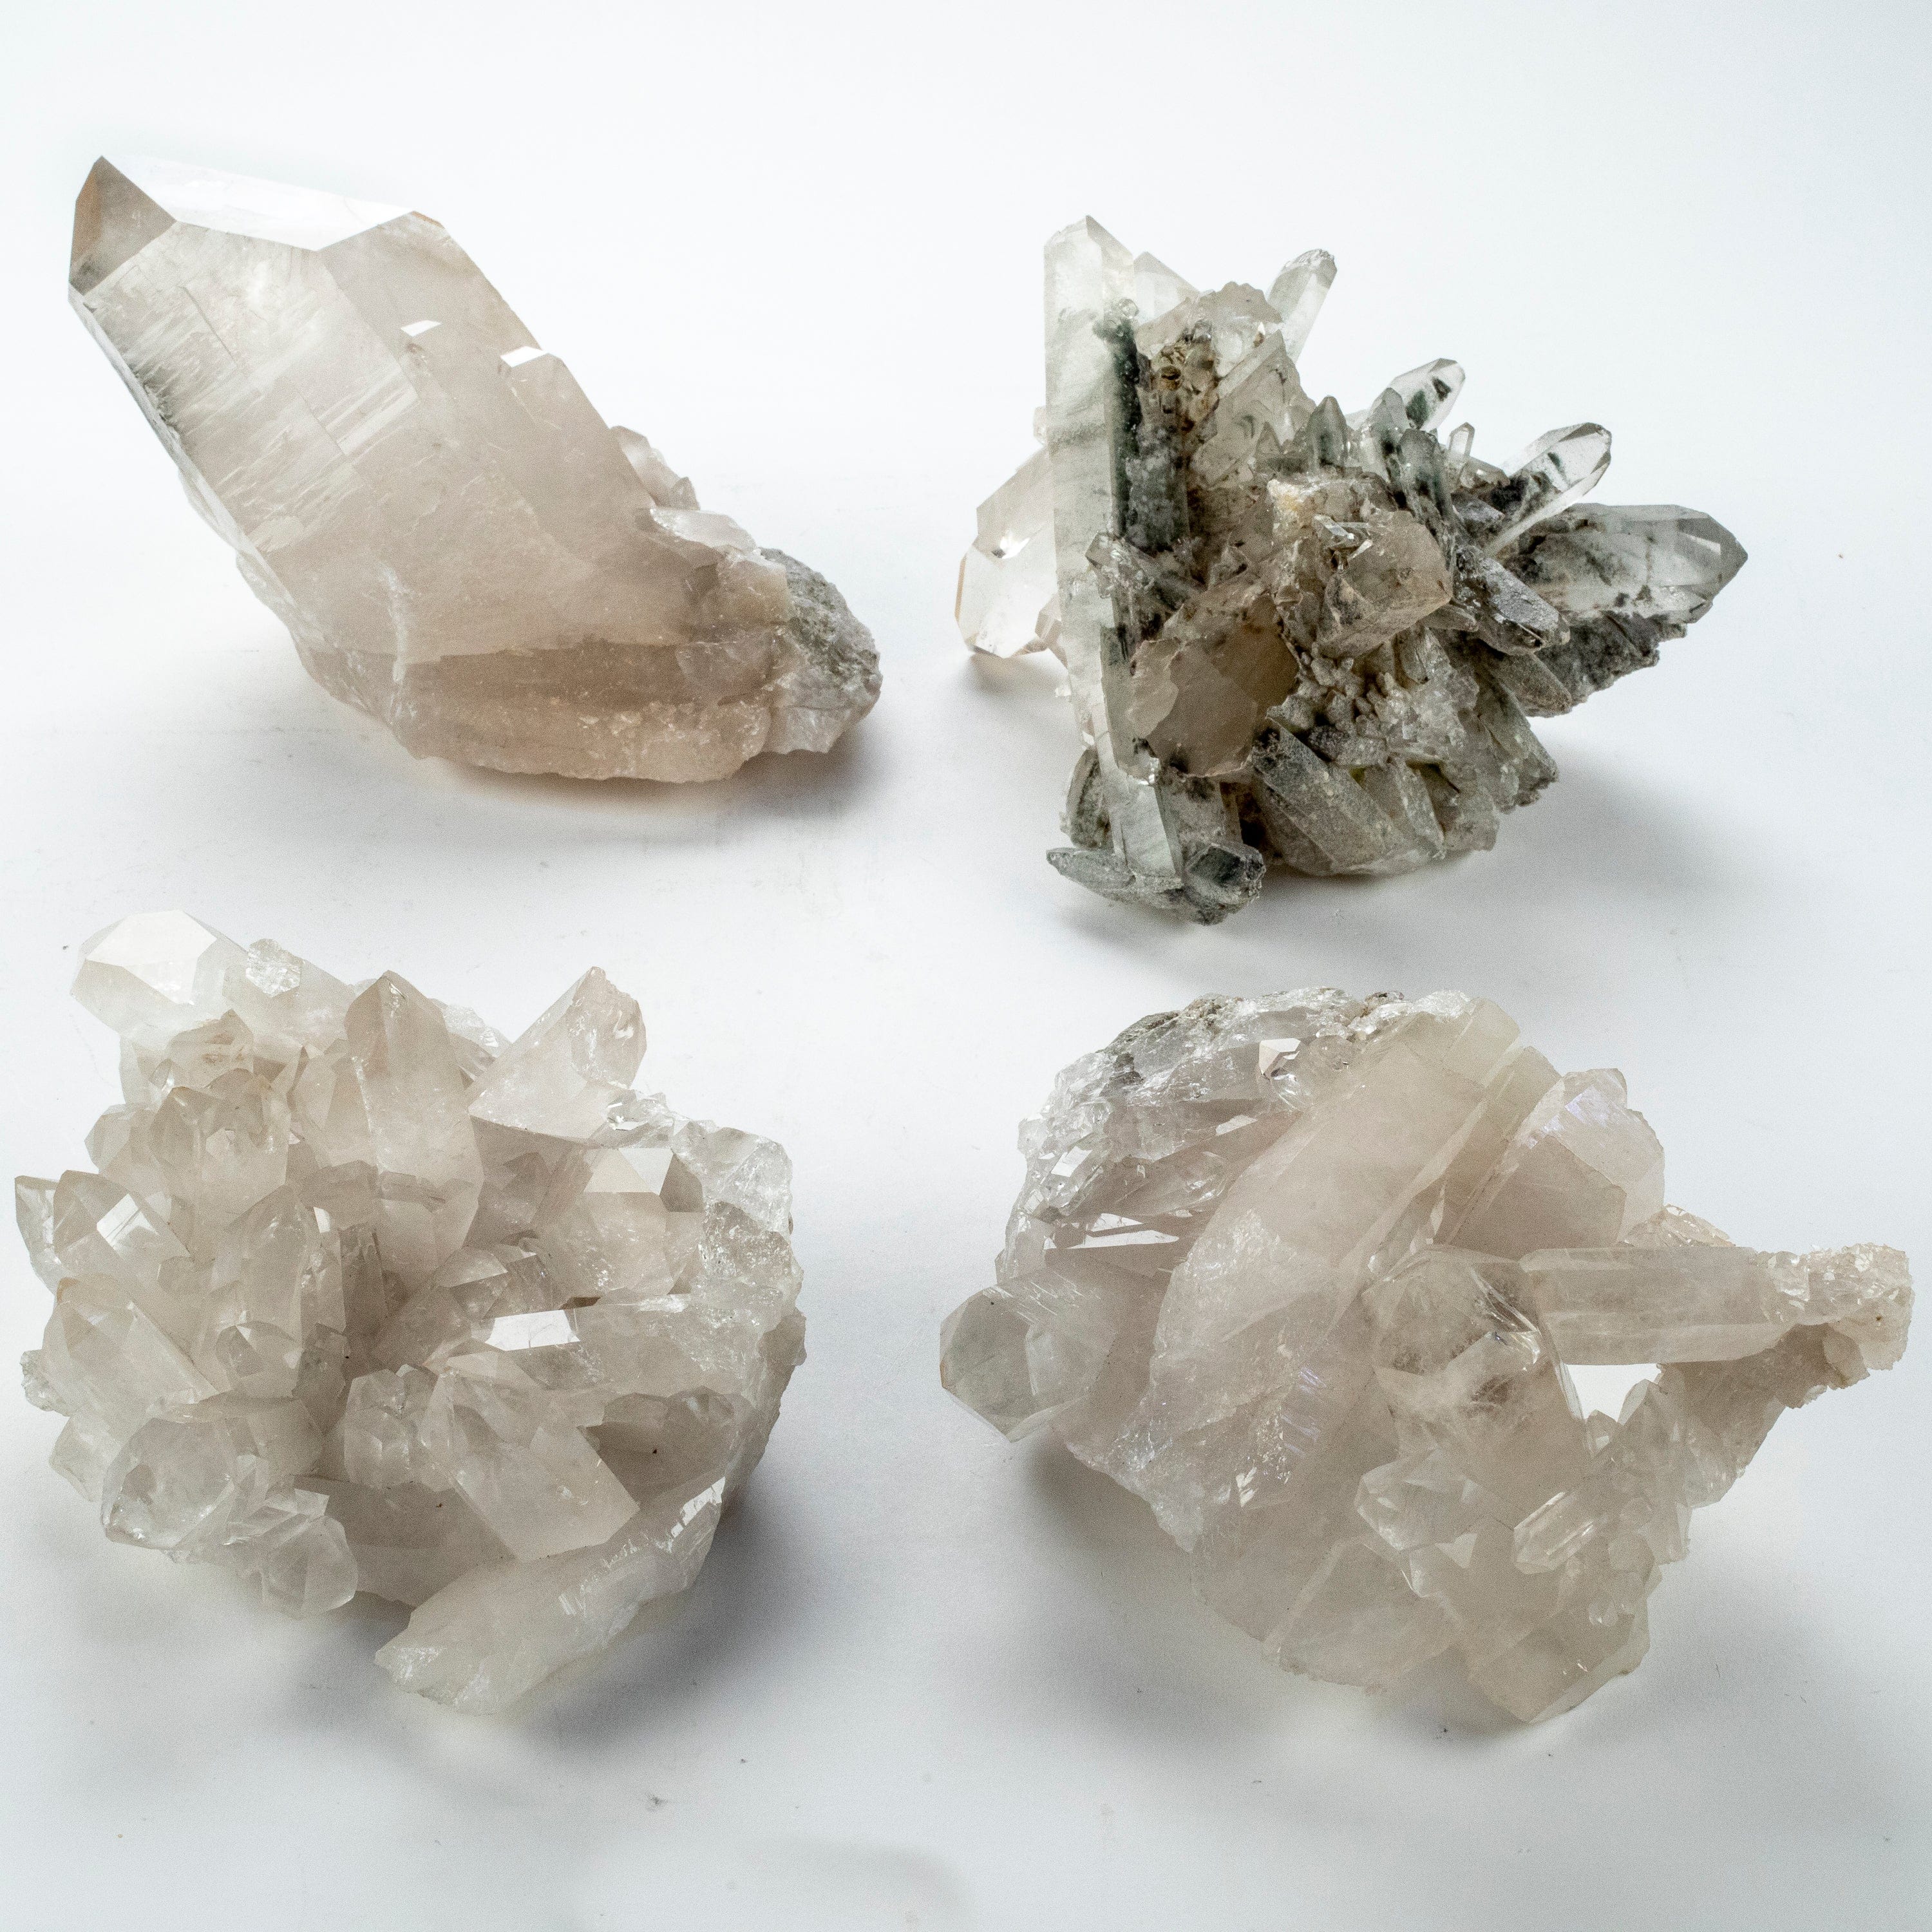 Kalifano Quartz Natural Crystal Quartz Cluster - 2,500 grams QC1800